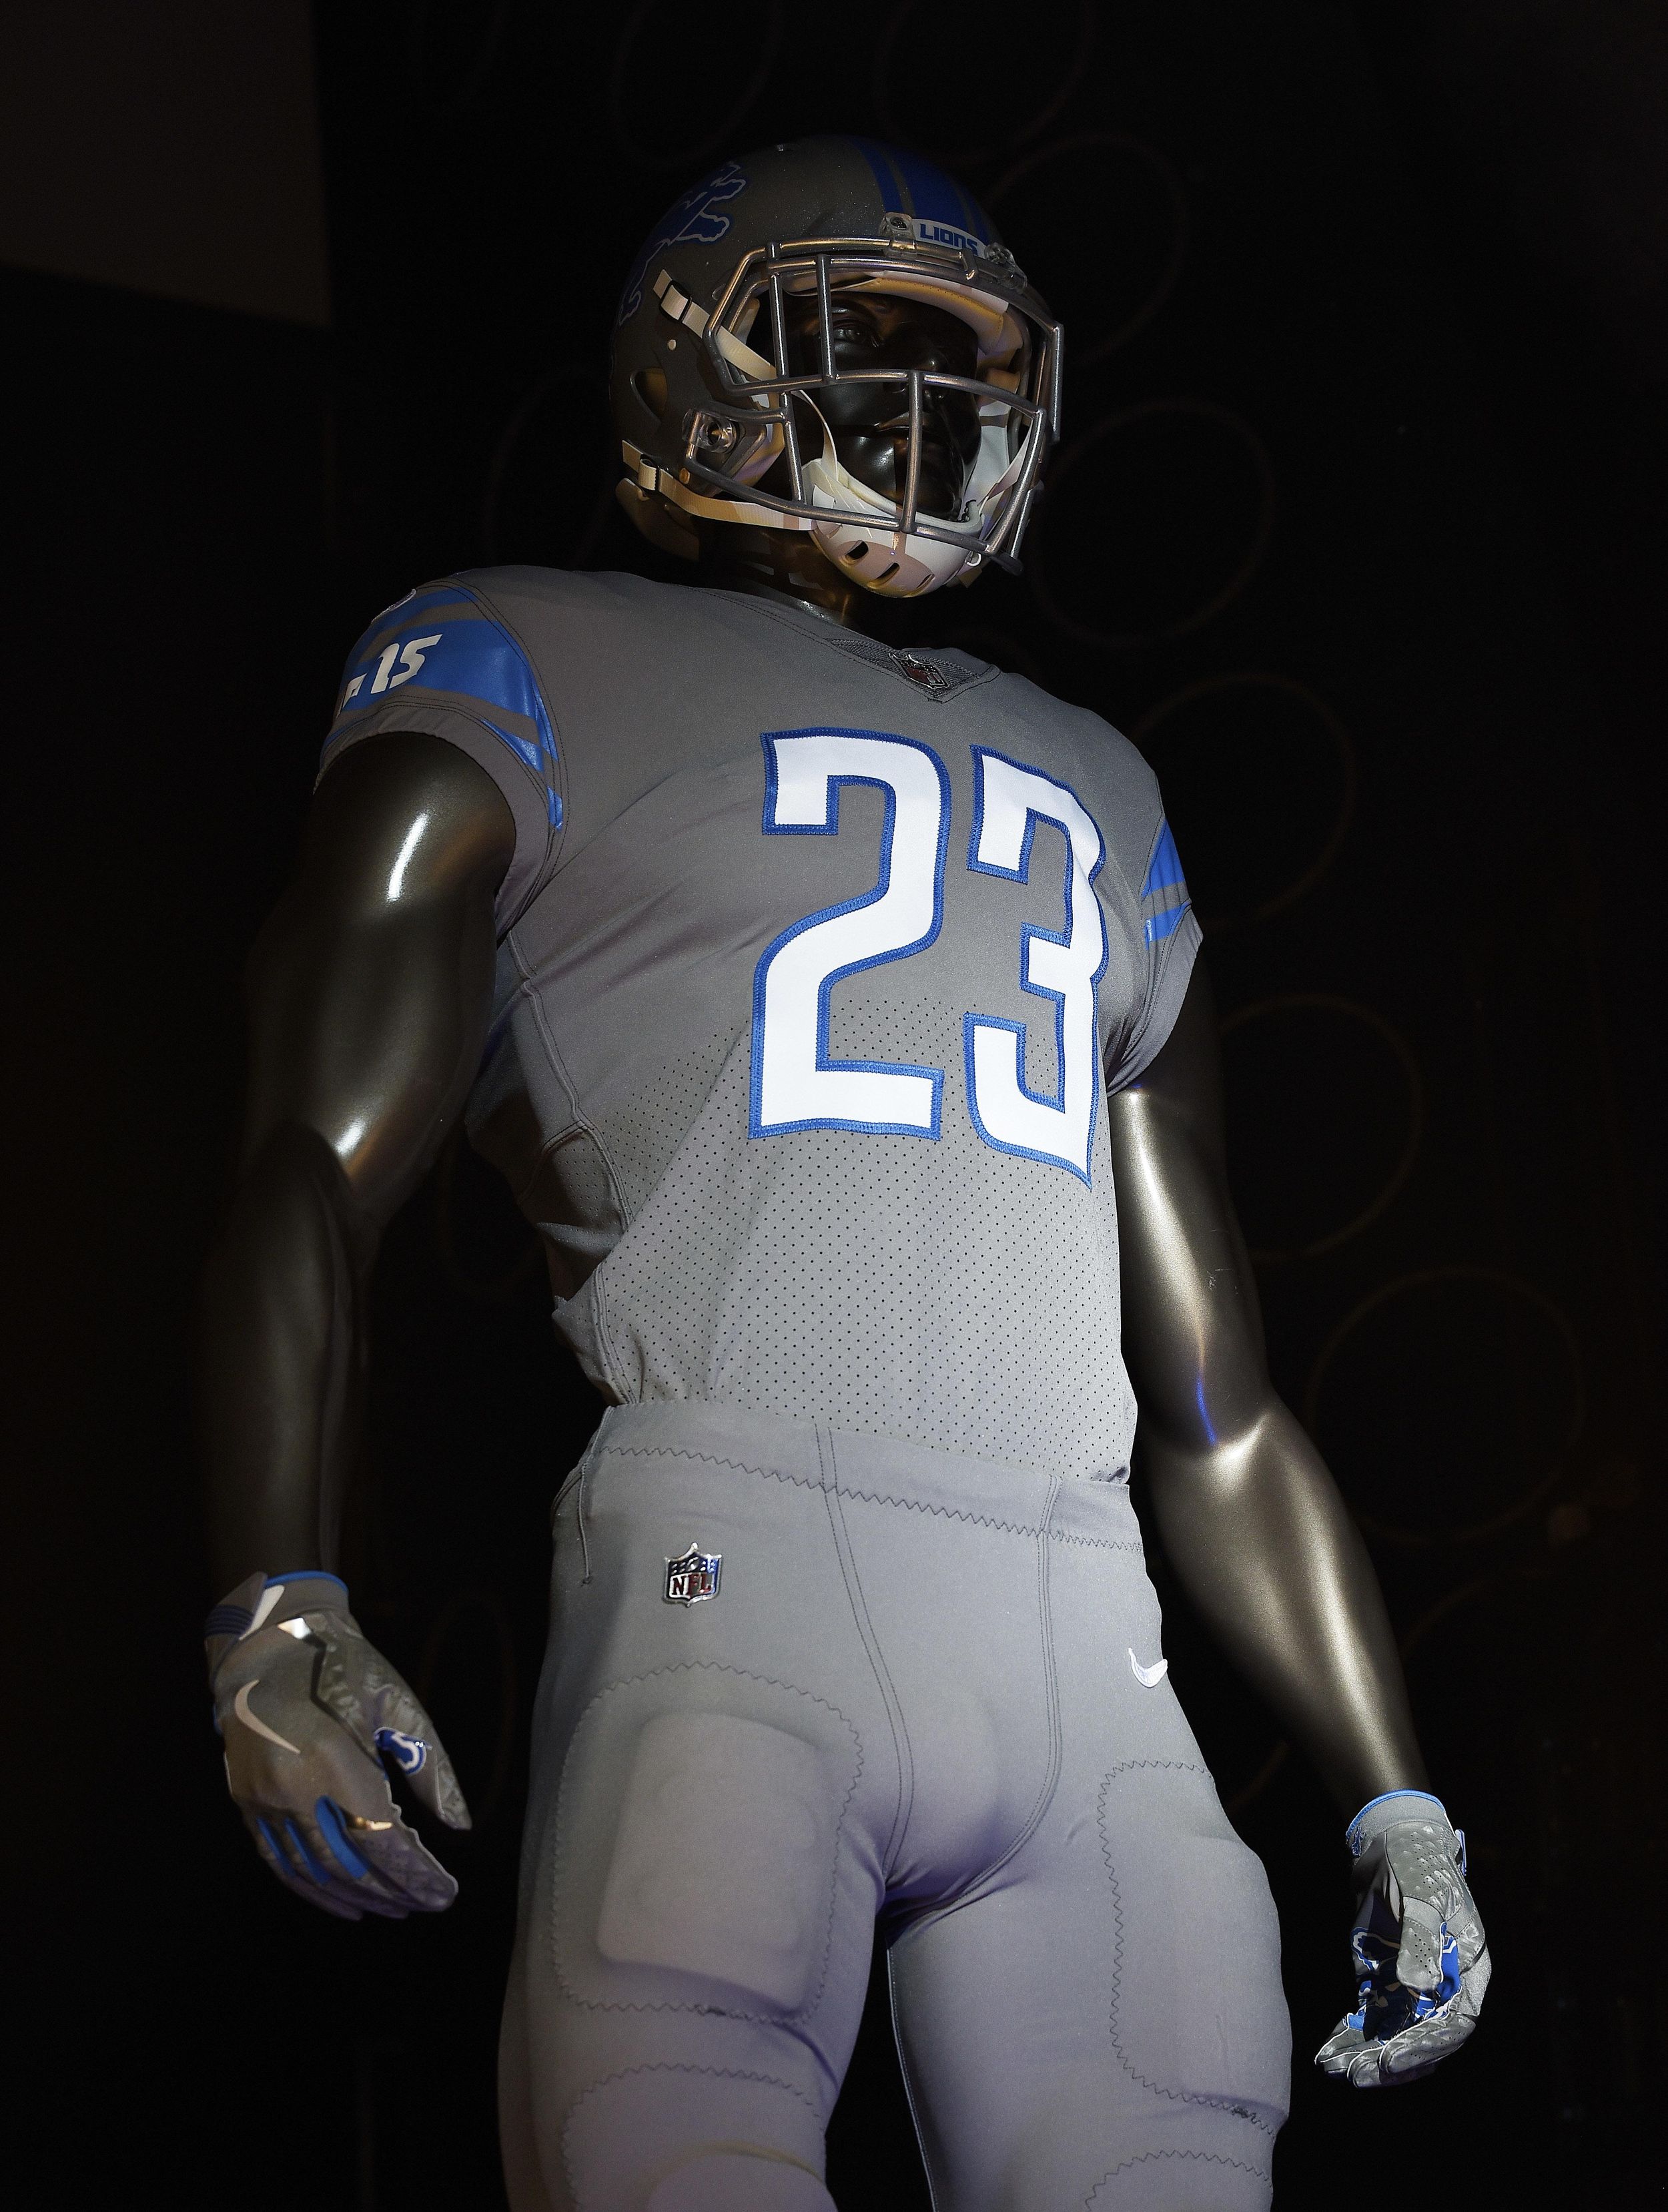 Closer look: Detroit Lions color rush uniforms